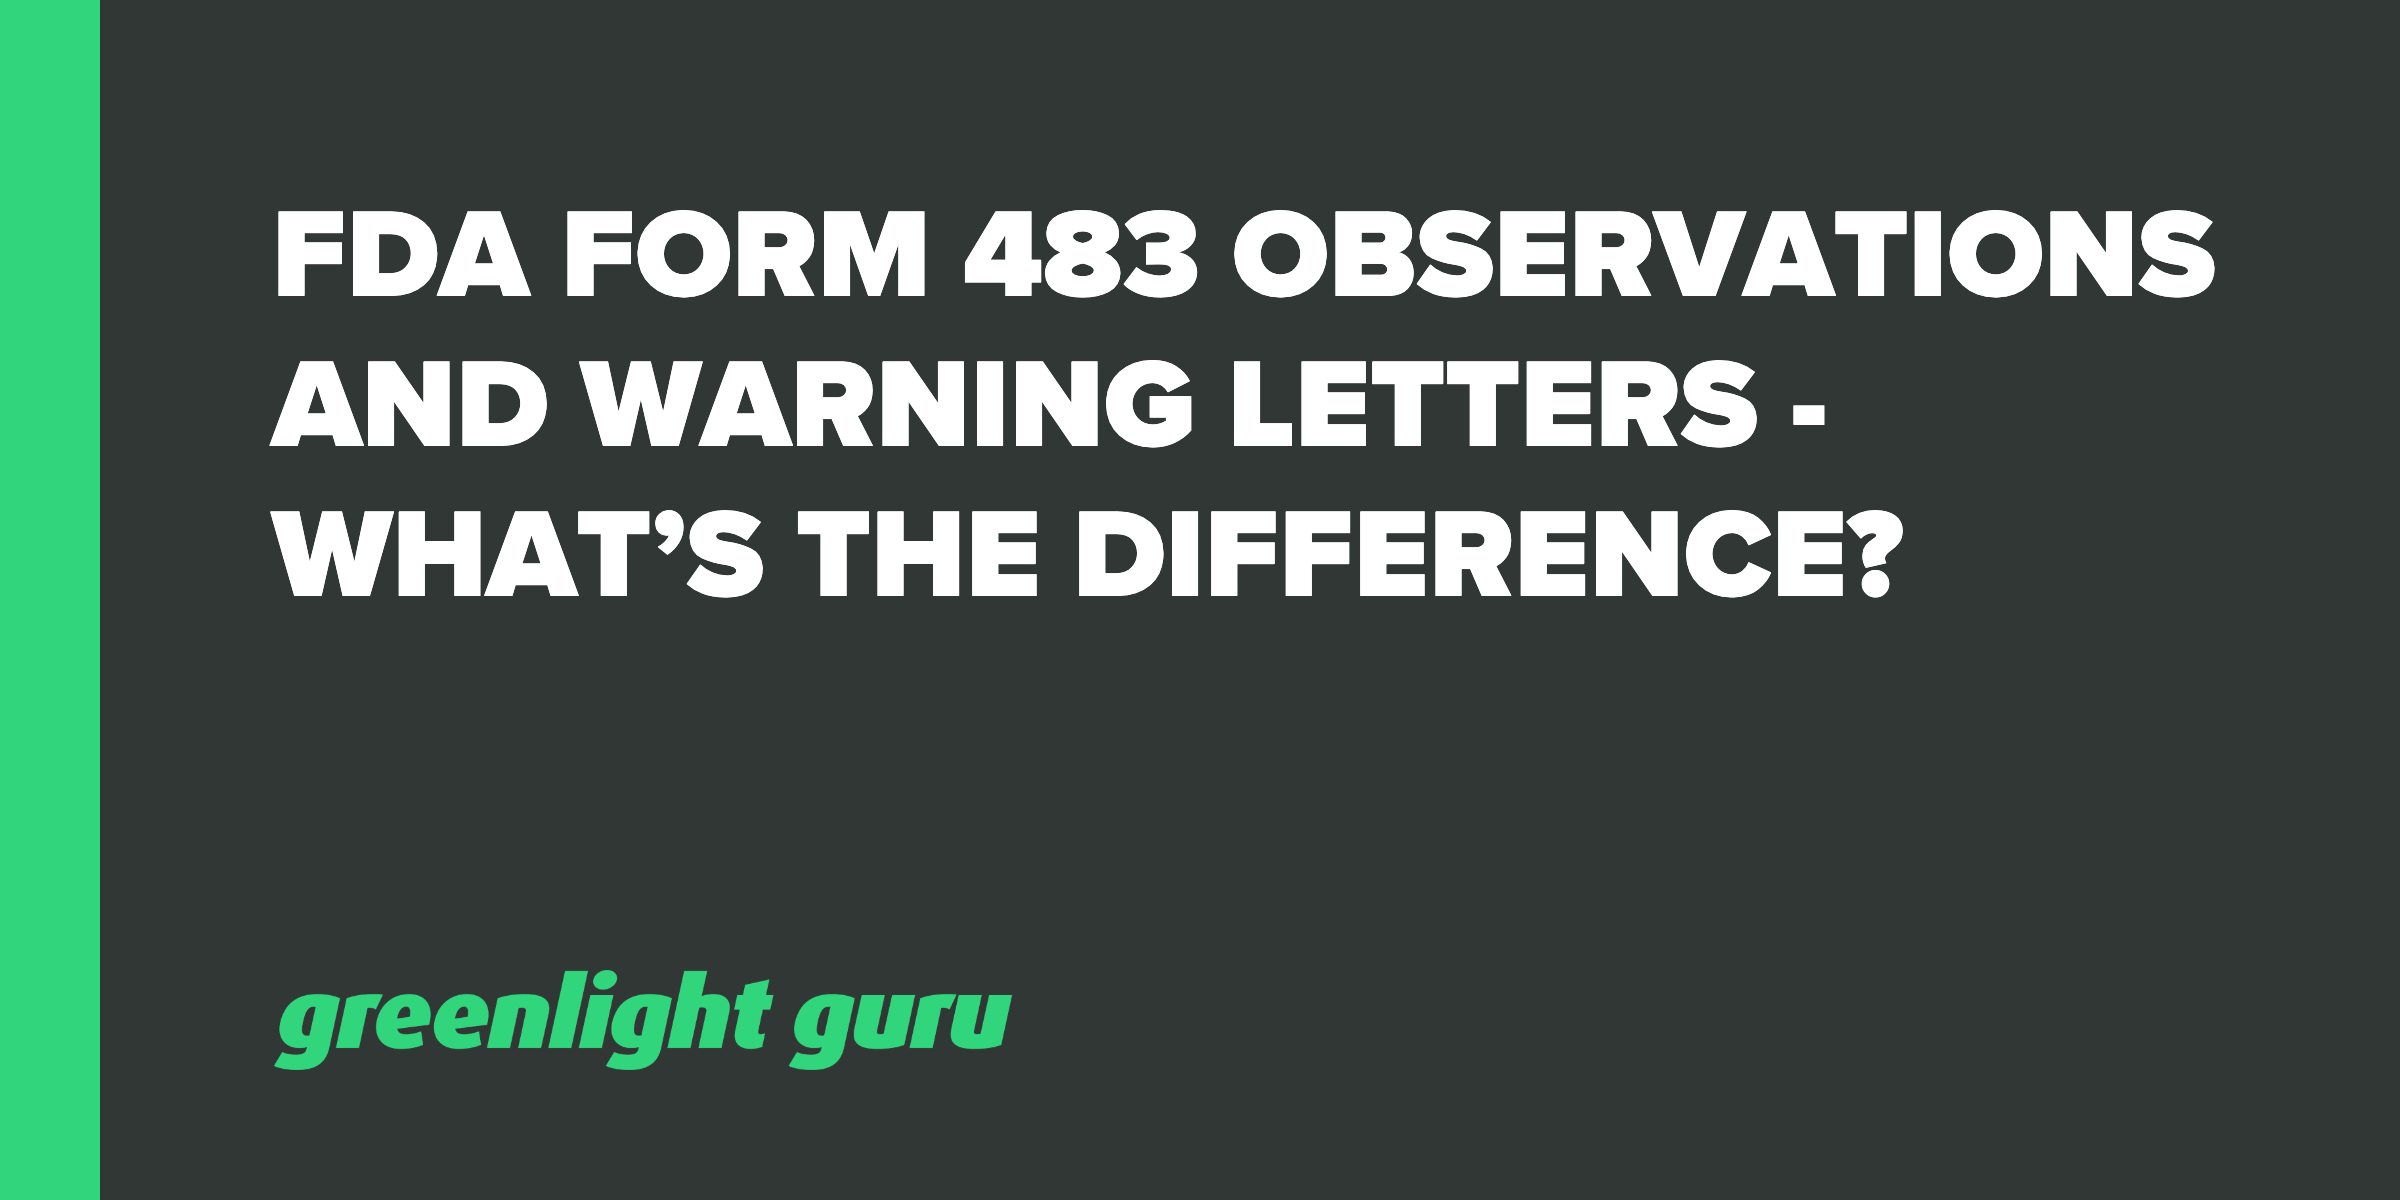 Er en 483 den samme som et advarselsbrev?